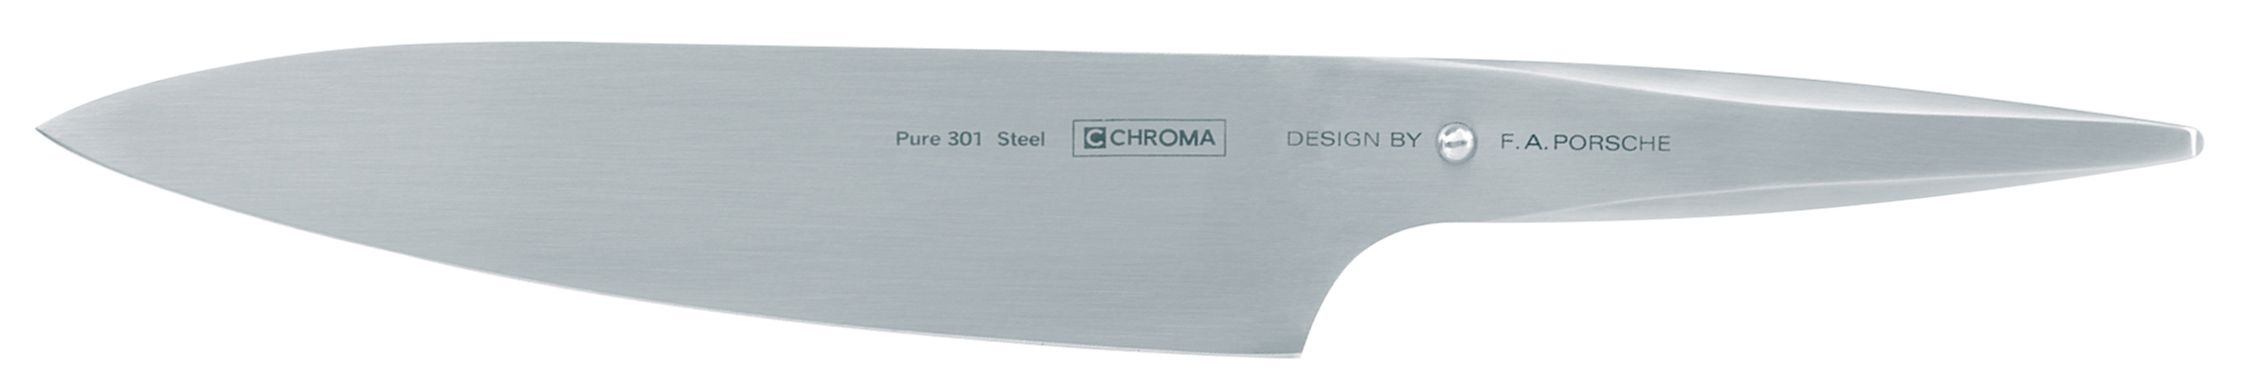 Couteau de chef - 20 cm Chroma type 301